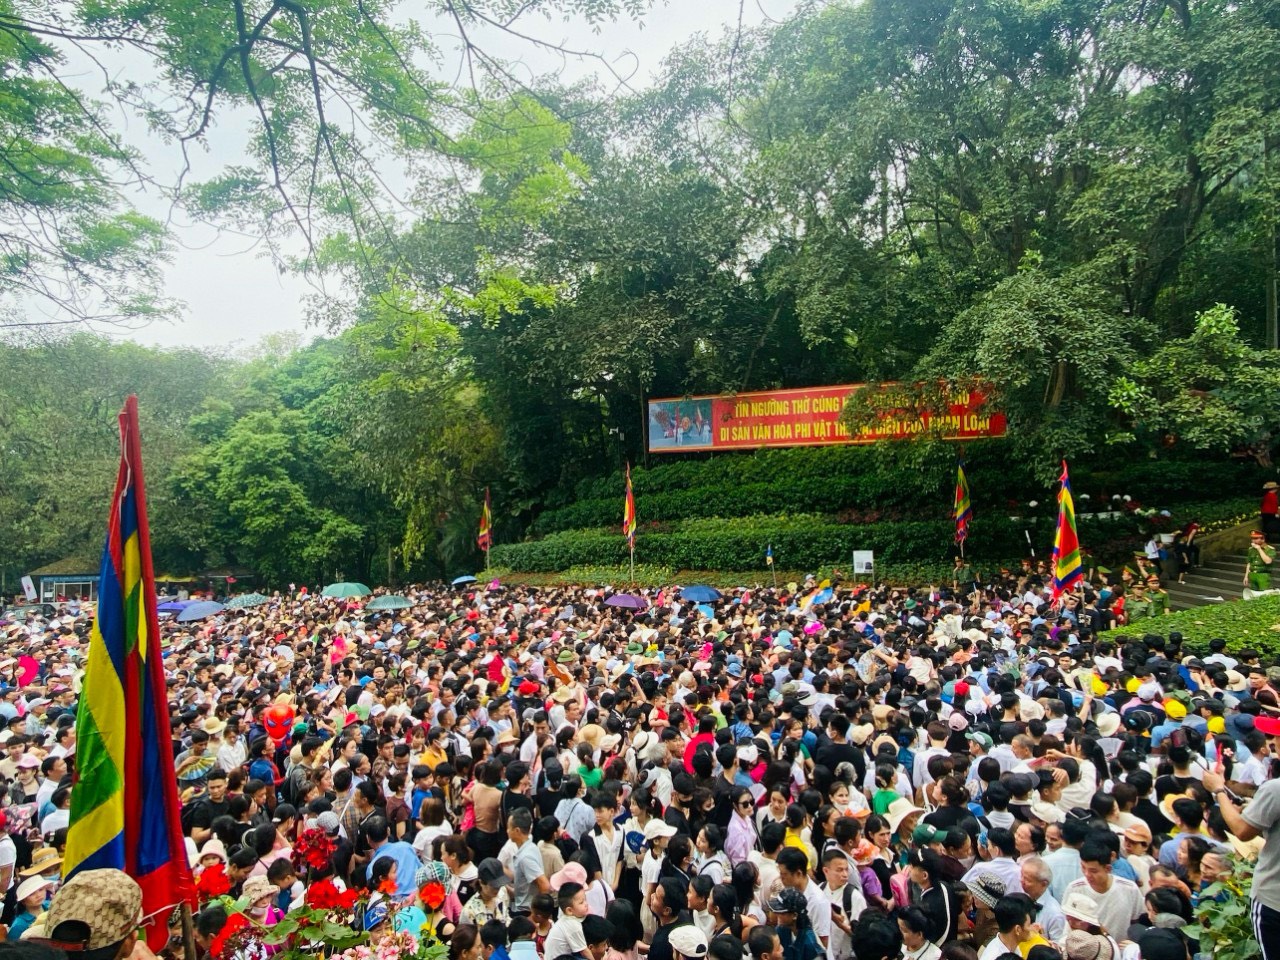 Chưa chính lễ, Phú Thọ đã đón gần 1,5 triệu lượt khách về trẩy hội Đền Hùng - Ảnh 1.